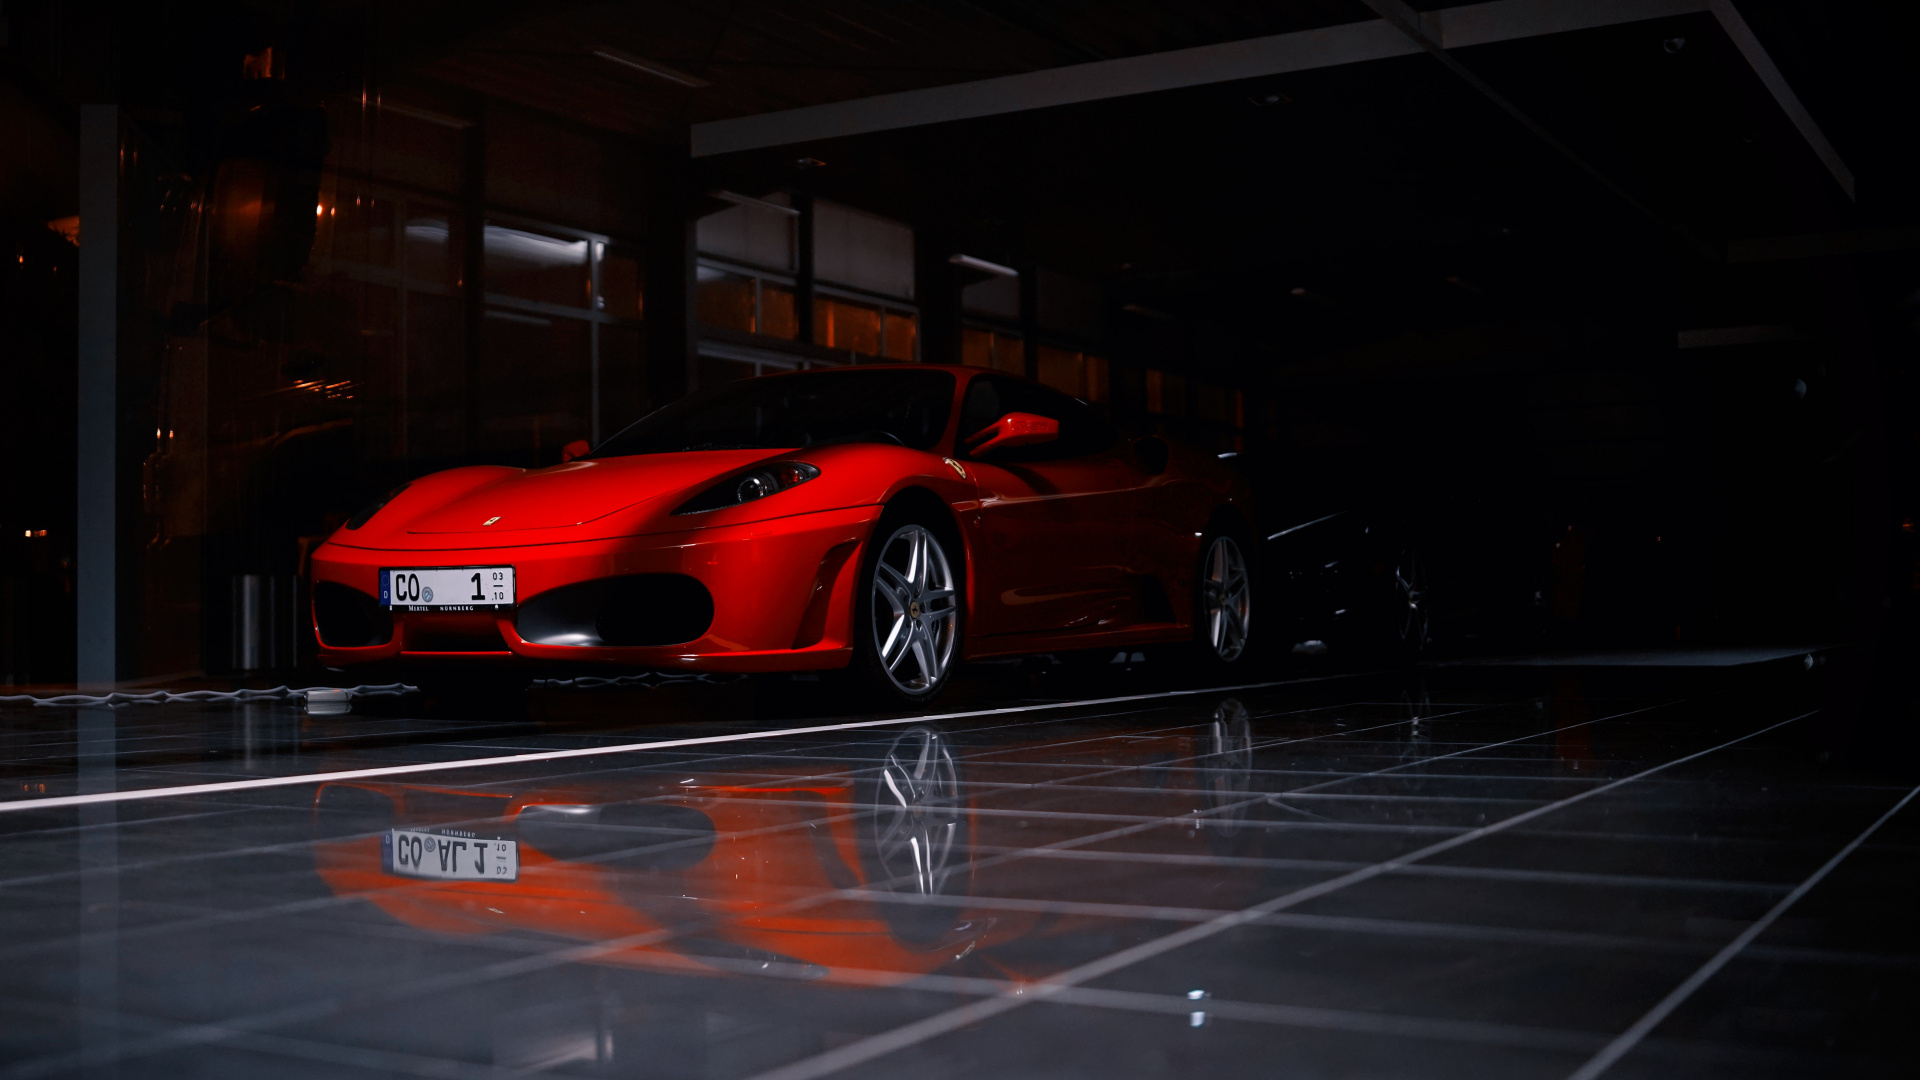 Ferrari 458 Italia Rojo Estacionado en el Estacionamiento. Wallpaper in 1920x1080 Resolution